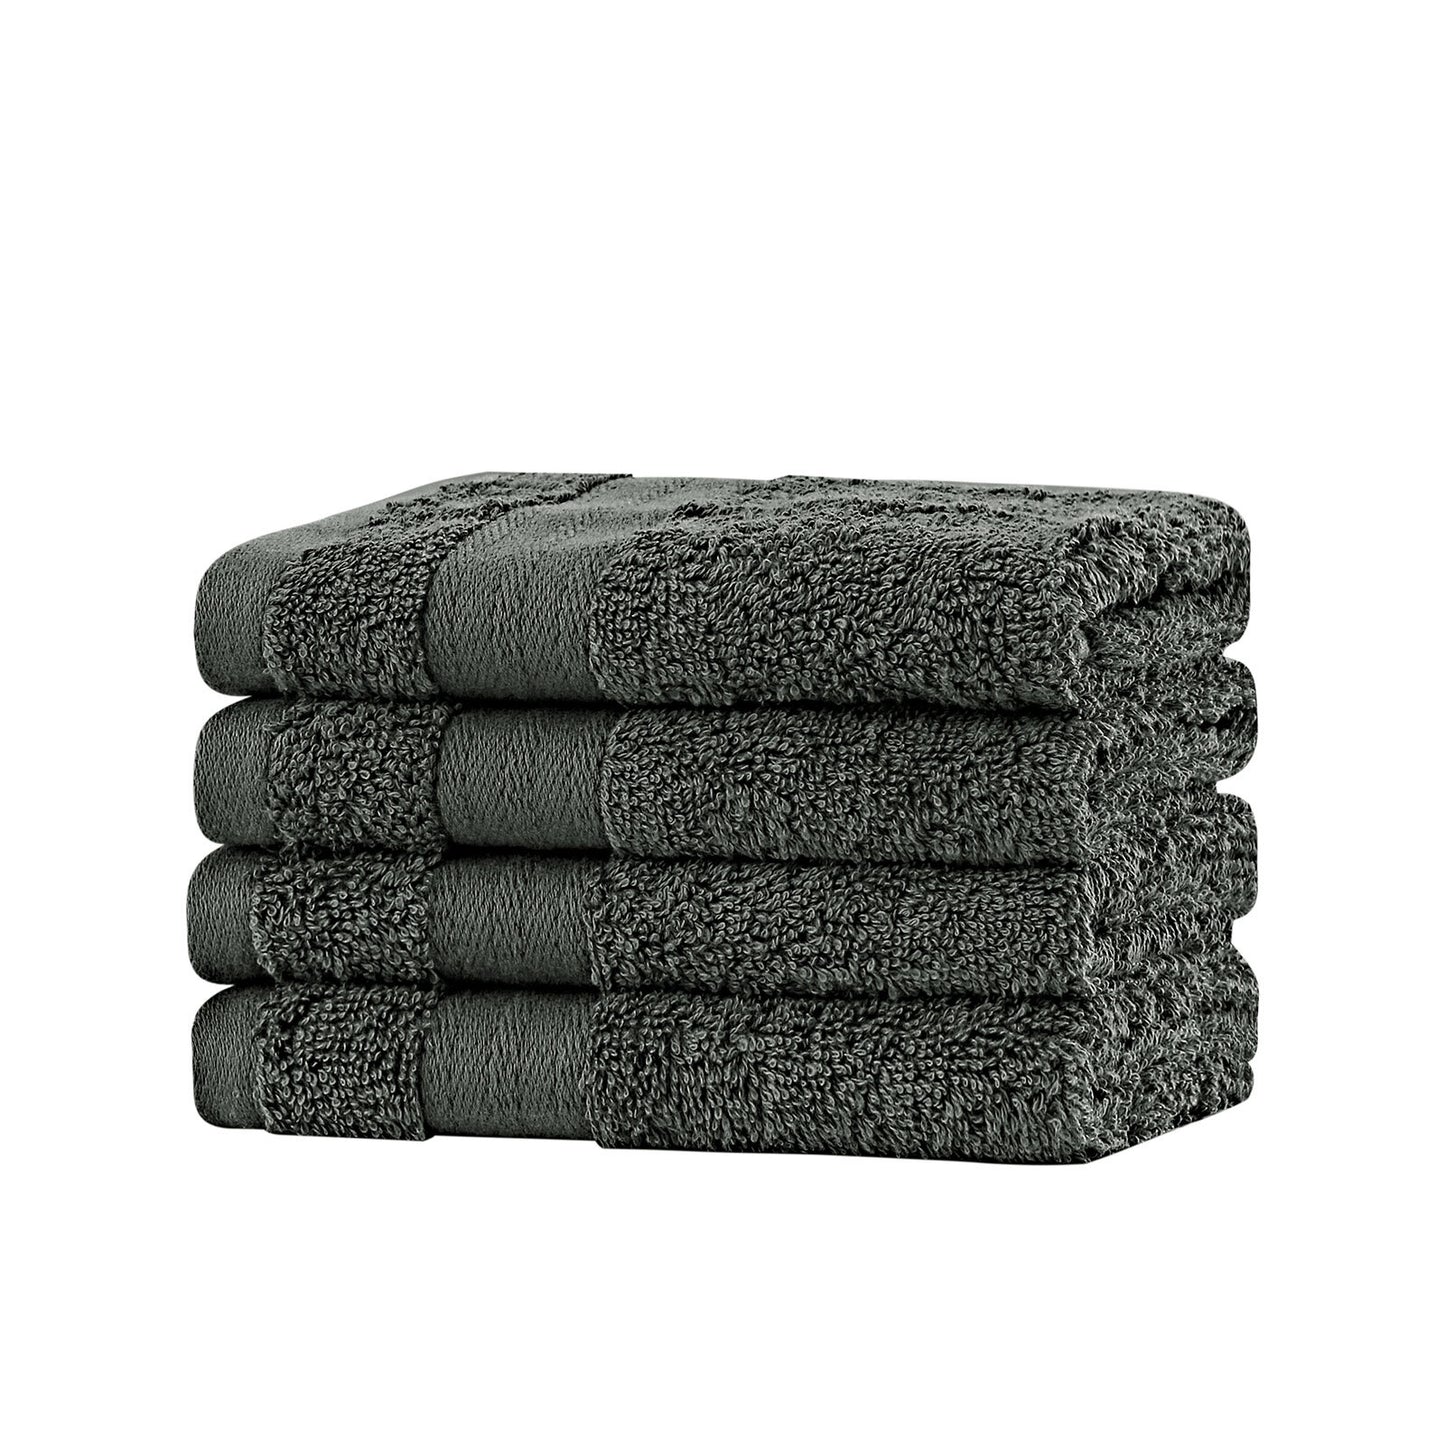 Linenland Bath Towel Set - 4 Piece Cotton Washcloths - Charcoal - BM House & Garden